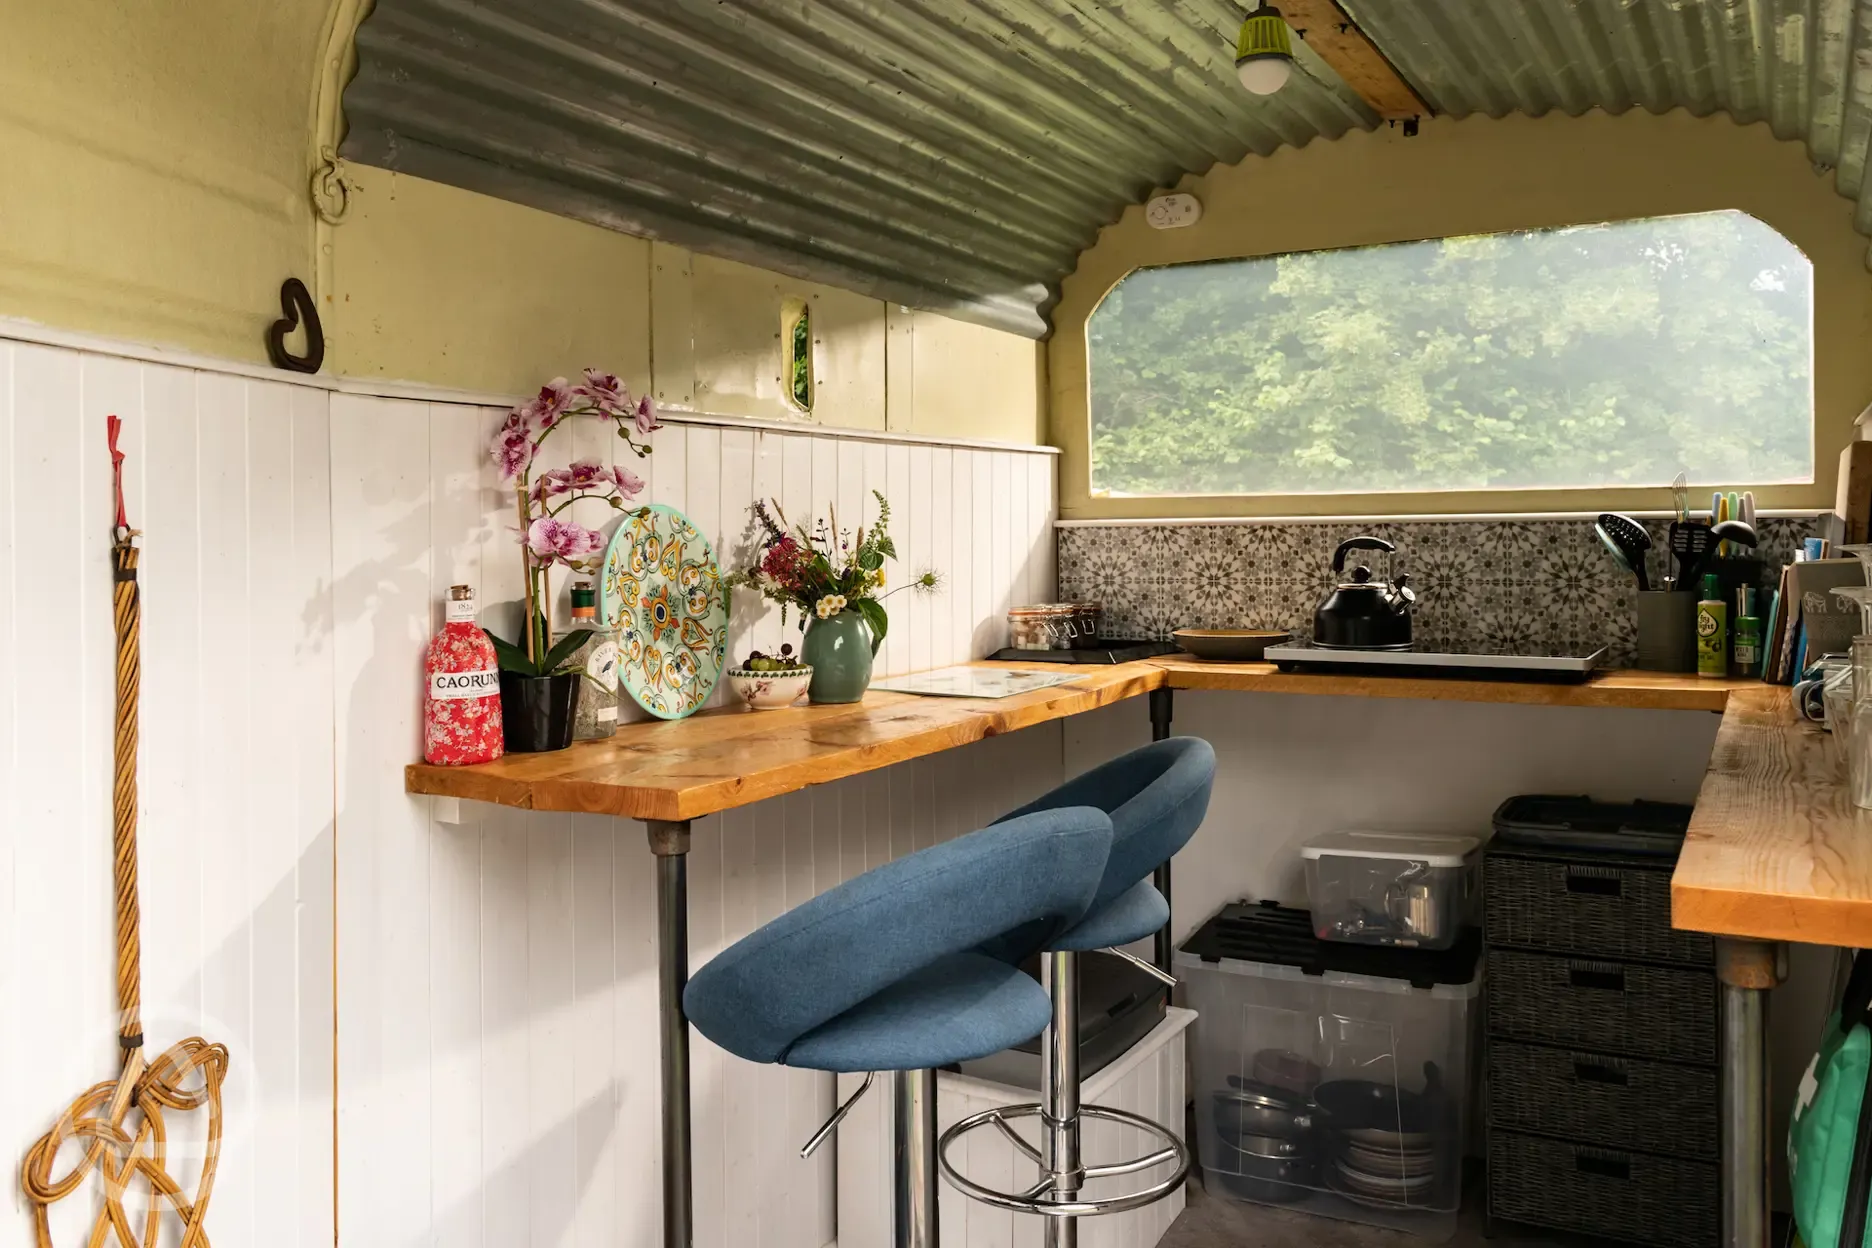 Inside trailer kitchen